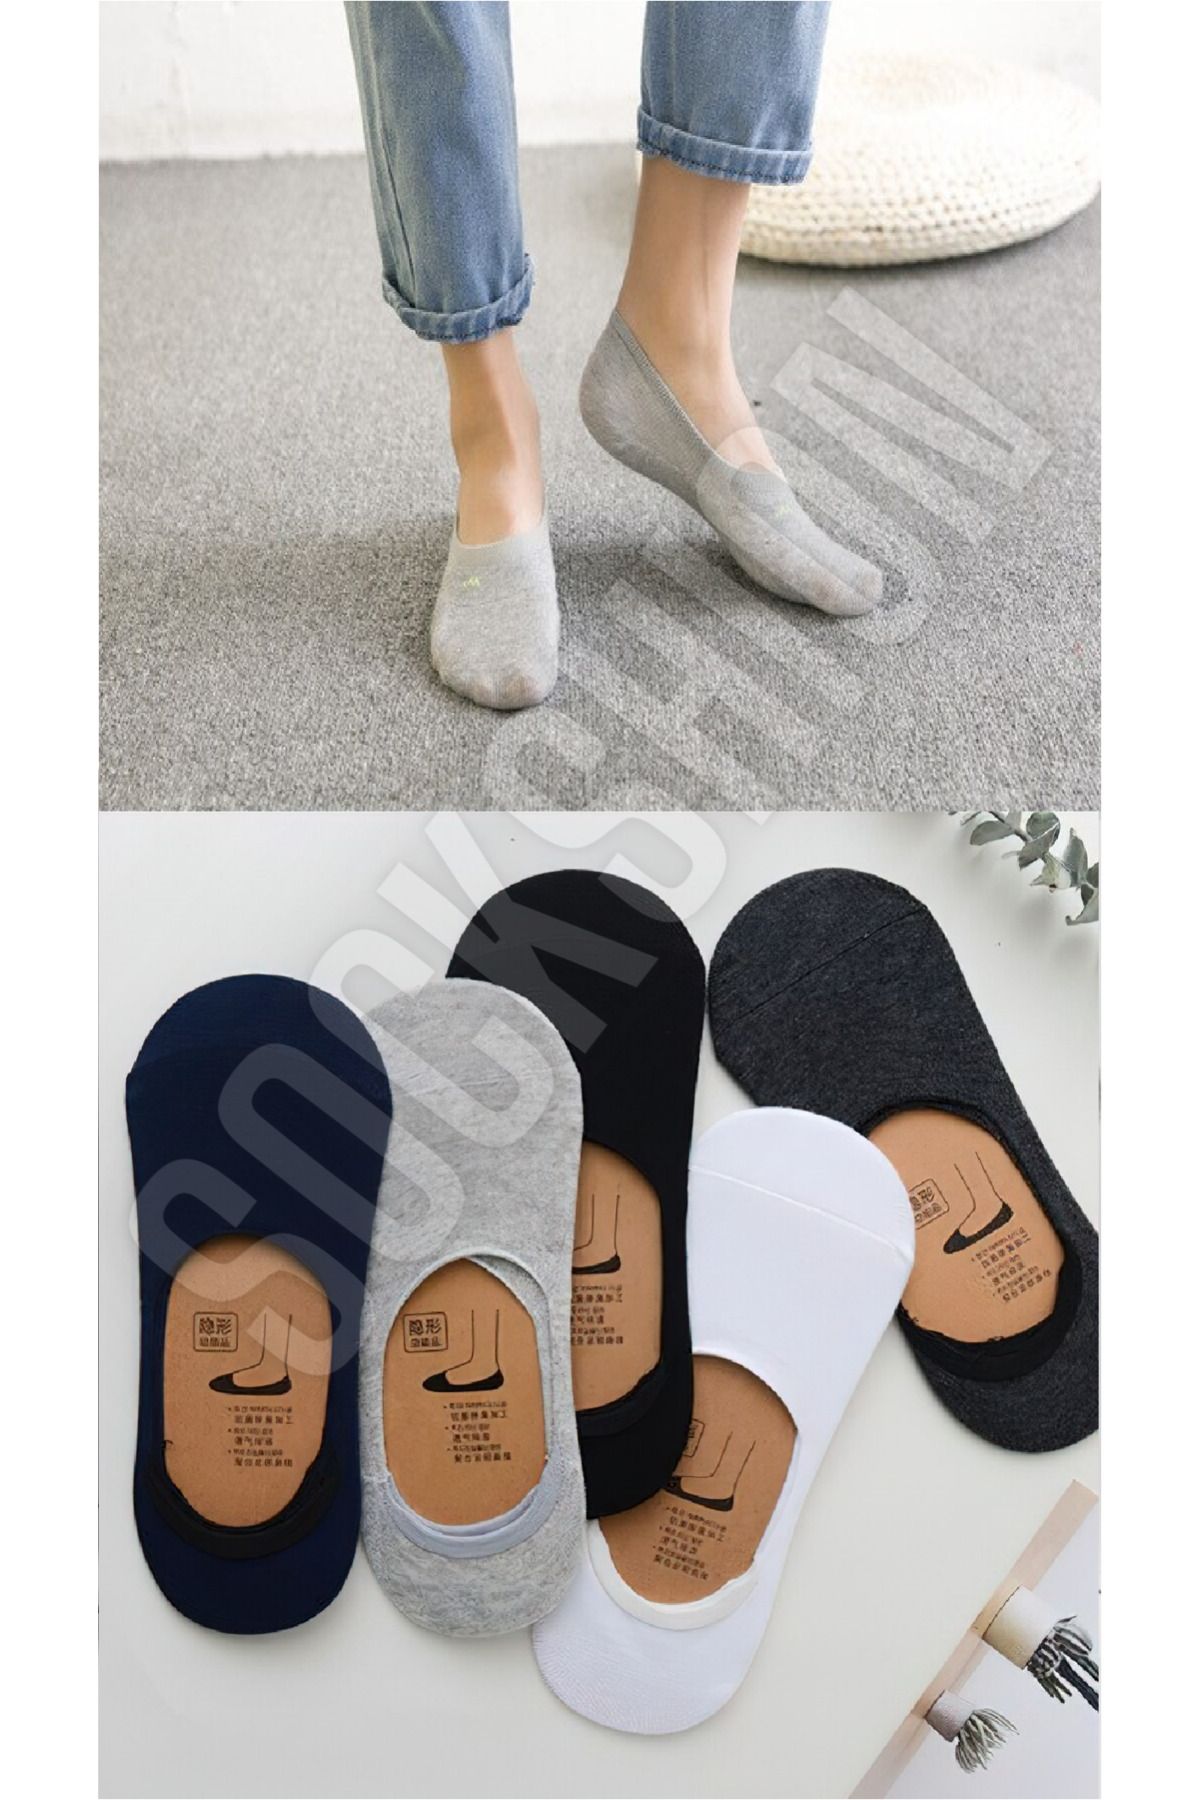 SOCKSHION Babet Çorap 5'li | Kadın Ve Erkek Ayak Bileği Çorapları | Yüksek Kaliteli Pamuklu Malzeme |